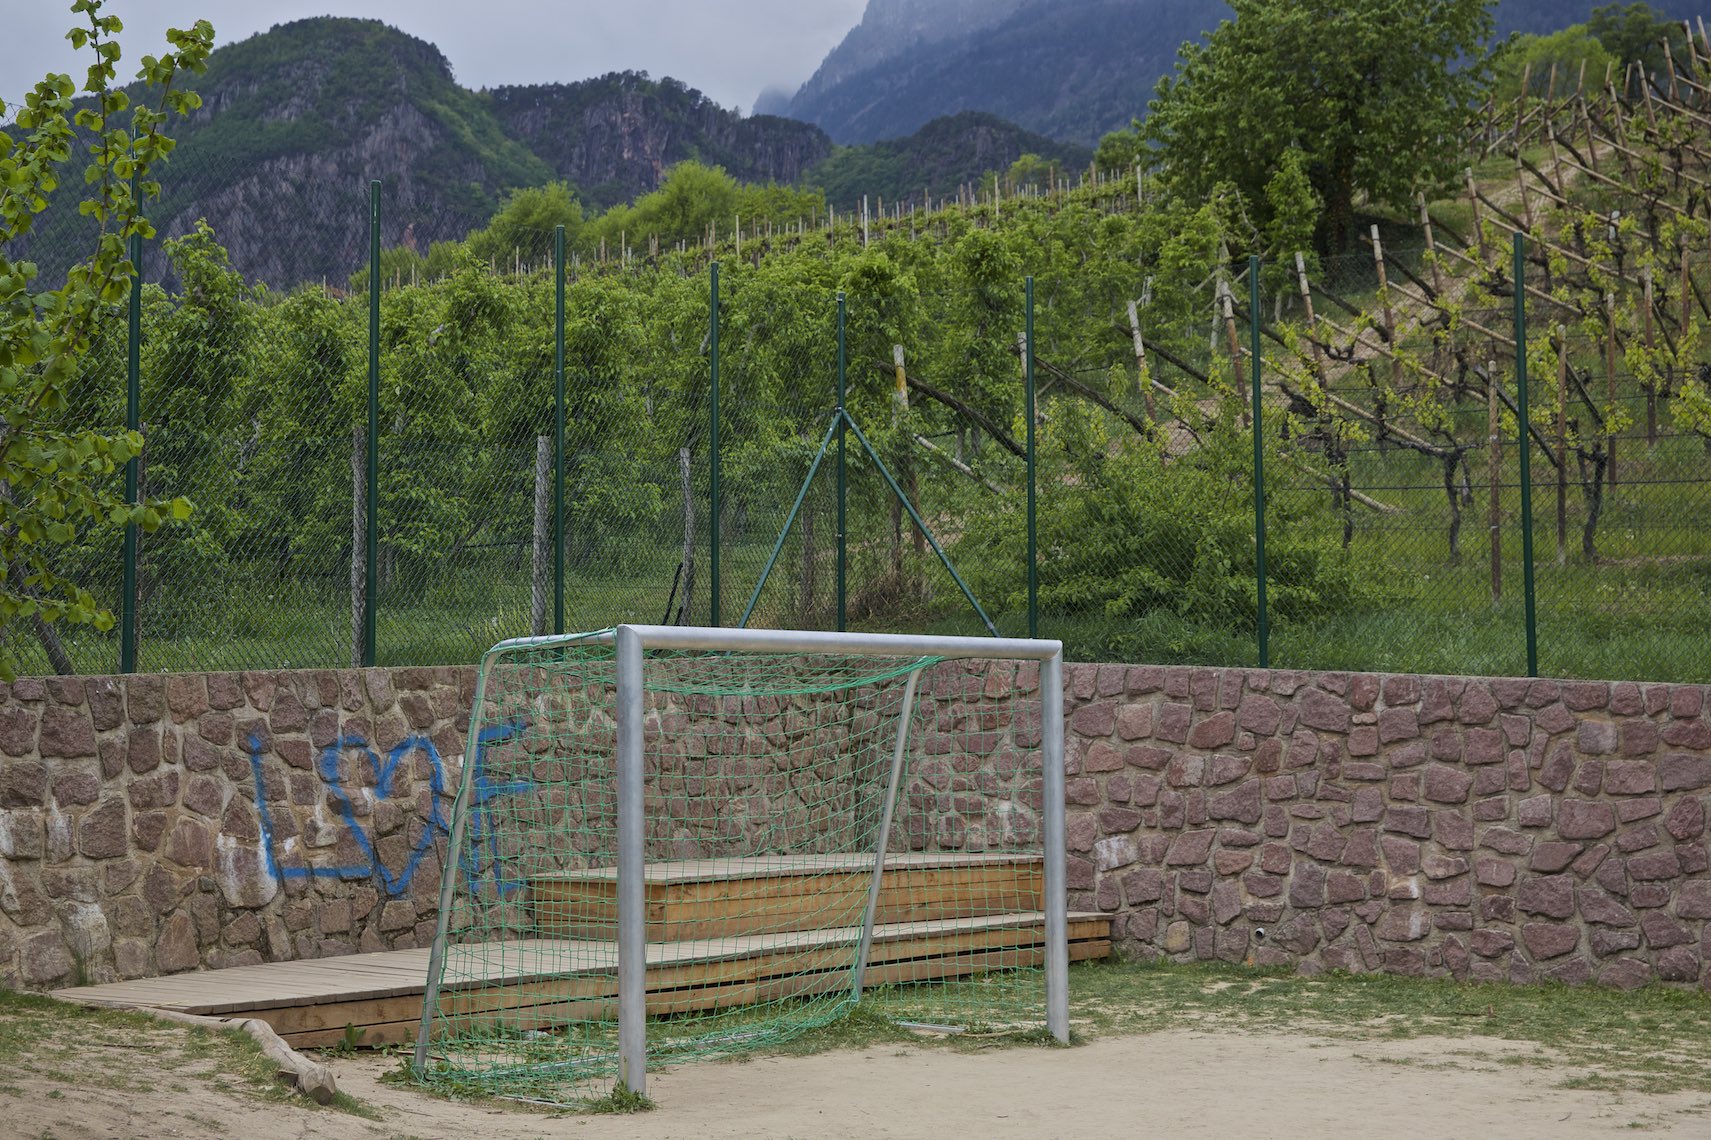 Soccer Field in a Vineyard